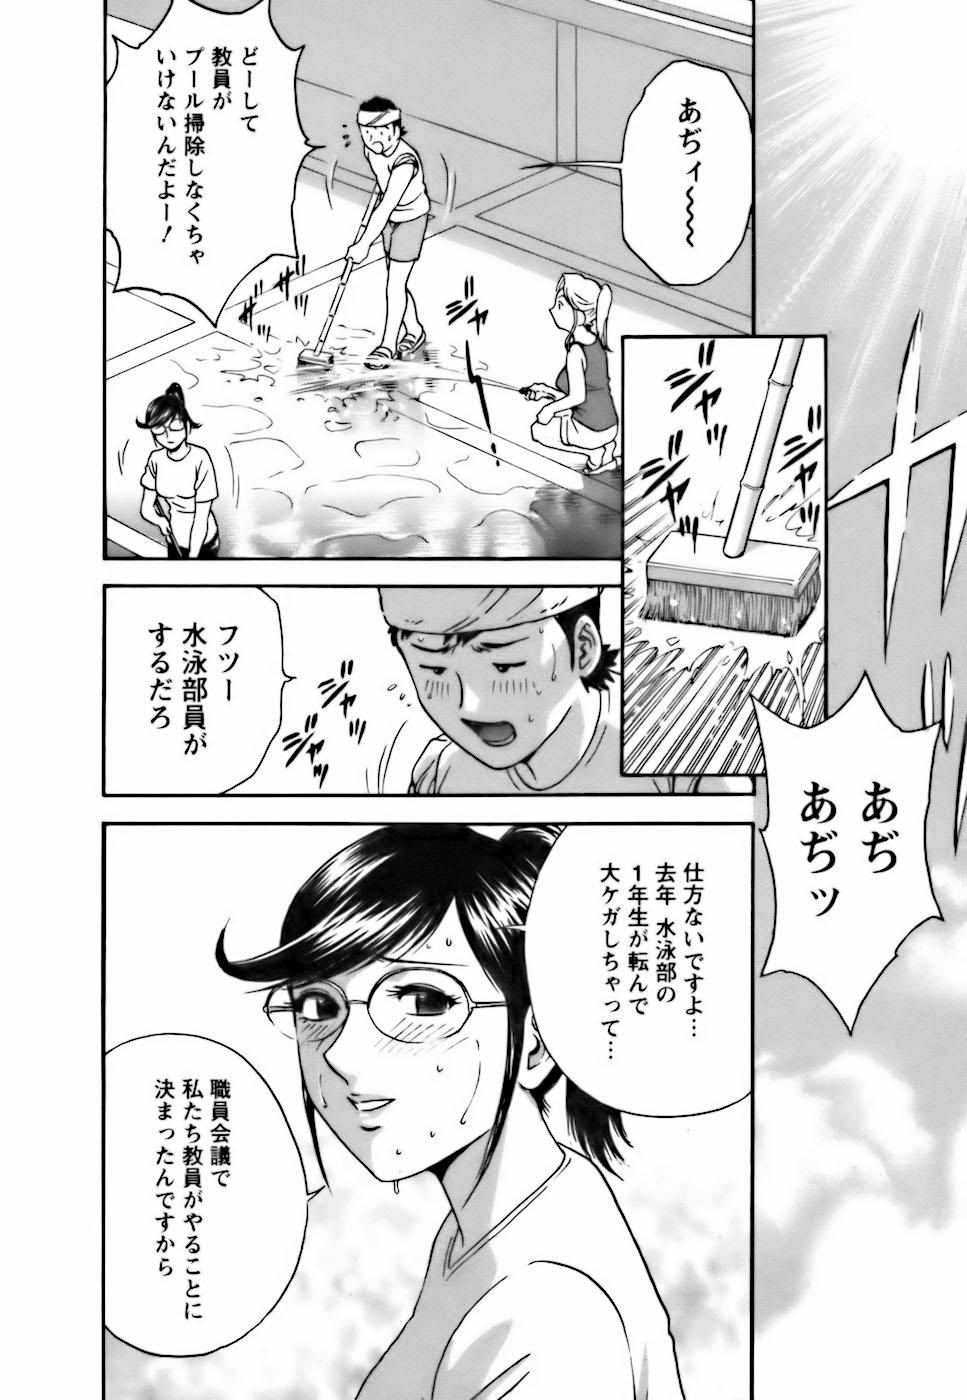 [Hidemaru] Mo-Retsu! Boin Sensei (Boing Boing Teacher) Vol.3 49